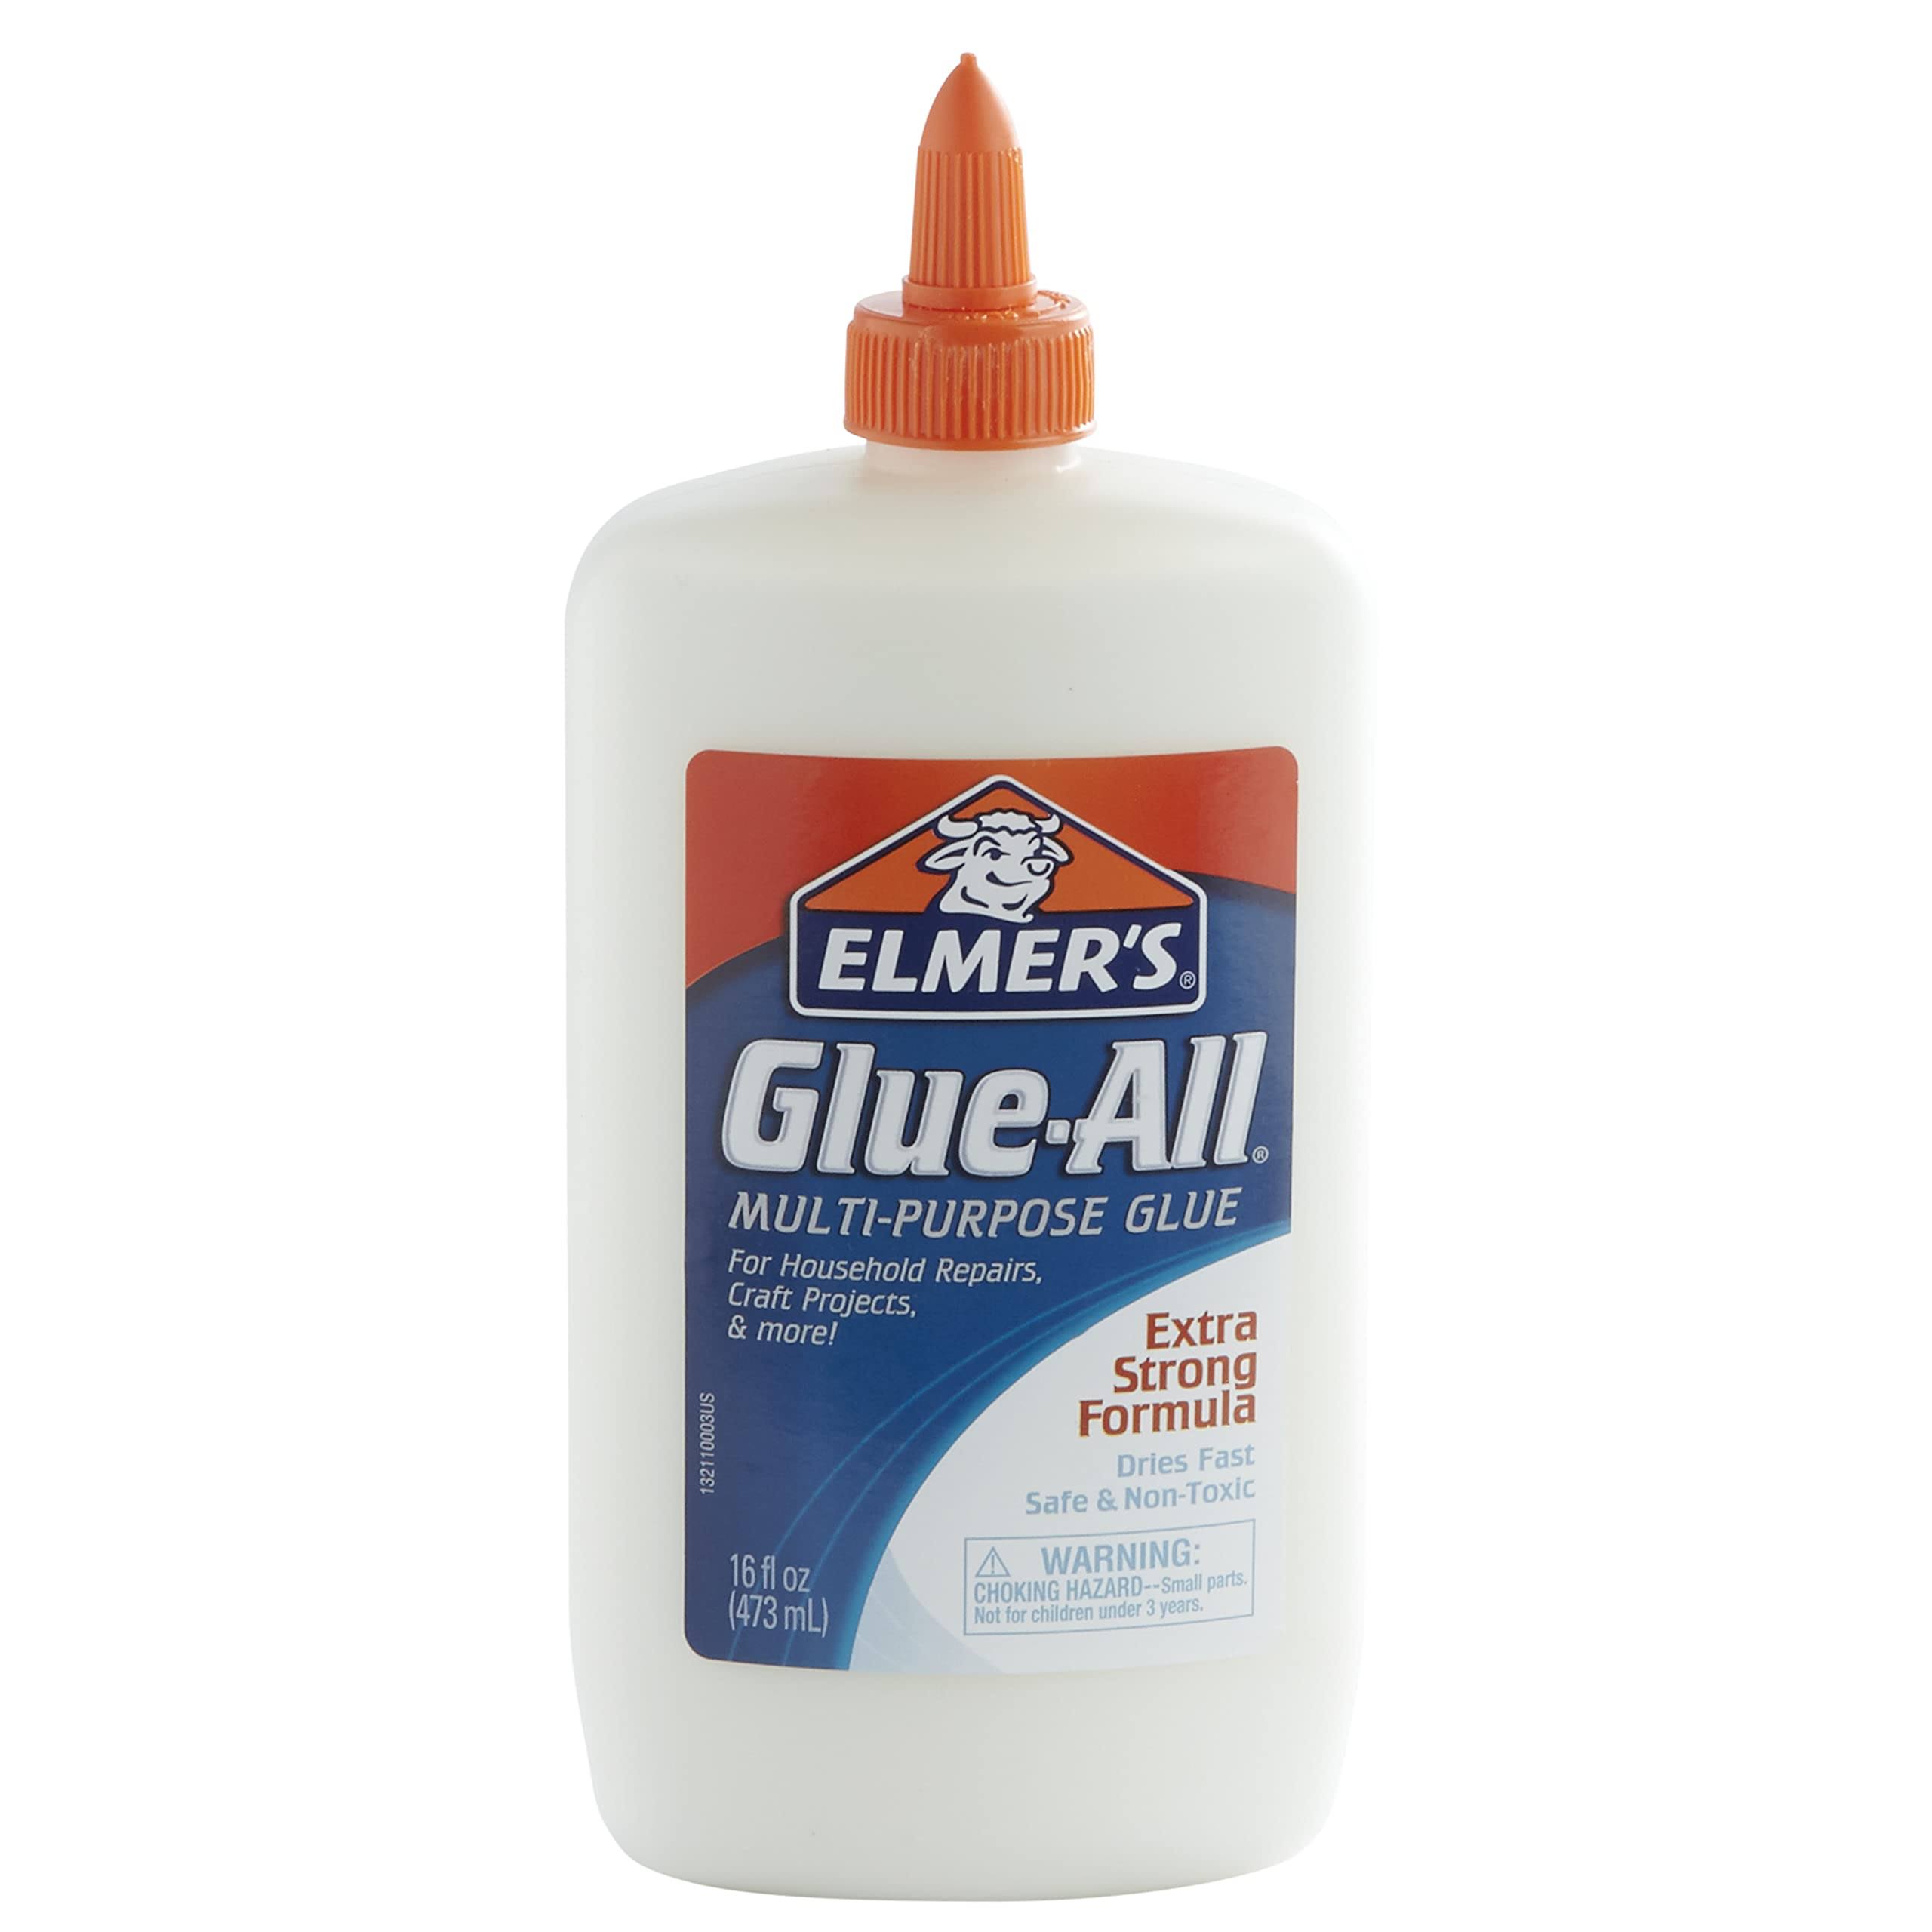 Elmer's Glue-All Multi-Purpose Glue - 470ml